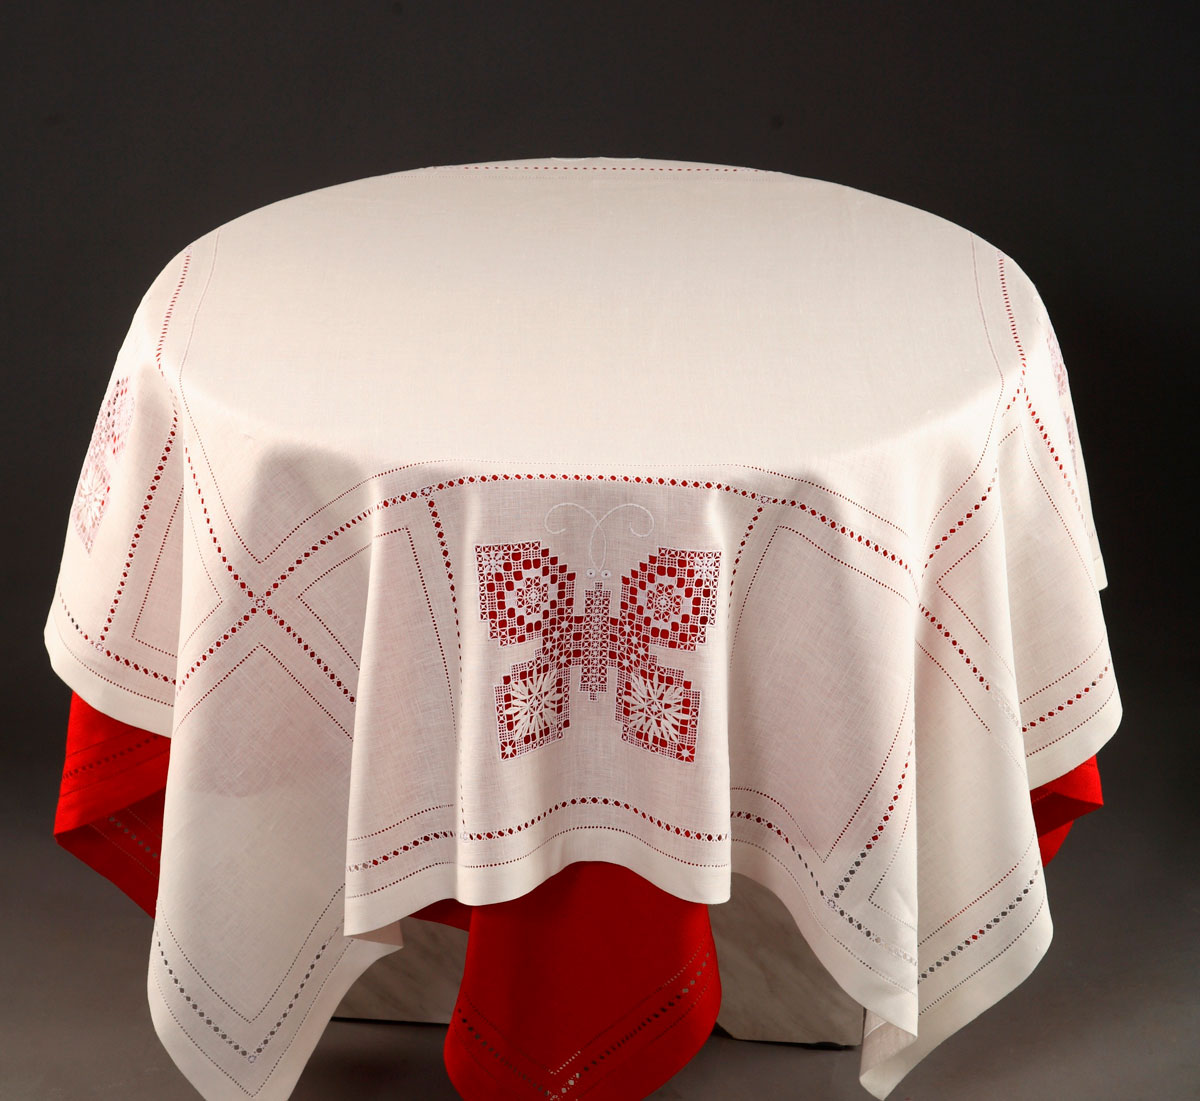 татарская скатерть на стол